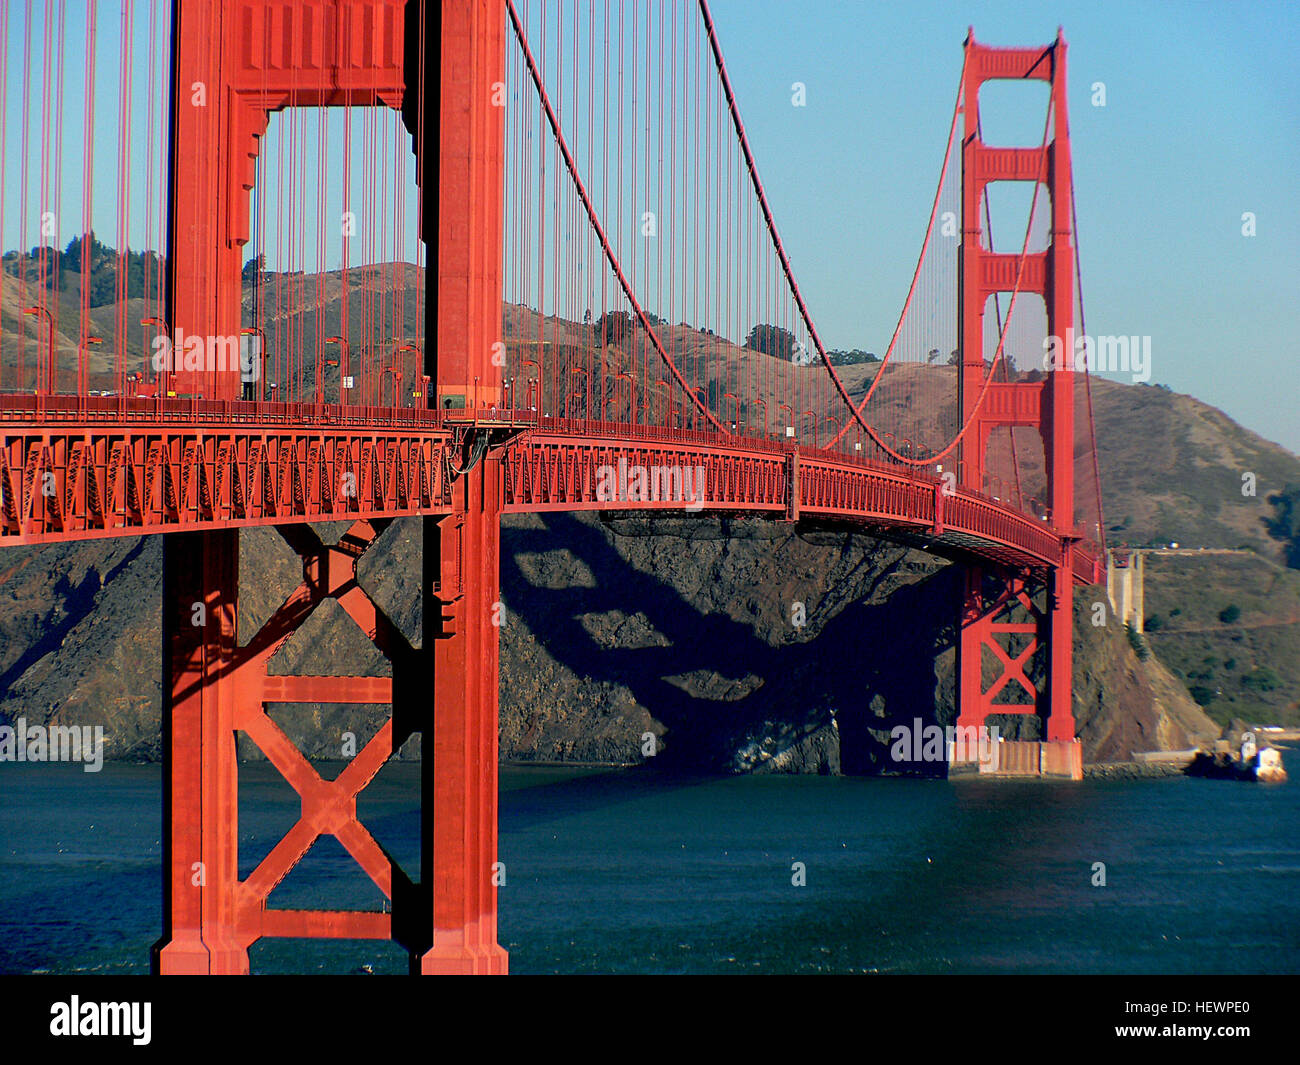 Die Golden Gate Bridge ist ein technisches Meisterwerk, das nur der Superlative bezeichnet werden kann. Wenn die Brücke im Jahr 1937 abgeschlossen war, war es die weltweit längste und höchste Hängebrücke. Golden Gate Bridge, San Francisco Golden Gate Bridge aber vor allem ist dieser meisterhafte Beispiel Engineering ein prächtiges Denkmal vor der schönen Kulisse.  Bau der Golden Gate Bridge begann 1933. Die Brücke, die von Ingenieur Joseph Strauss entworfene wurde gebaut, um San Francisco mit Marin County über 1600 Metern (5000 ft) breiten Meerenge bekannten verbinden, wie die Golden Gate, die Stockfoto